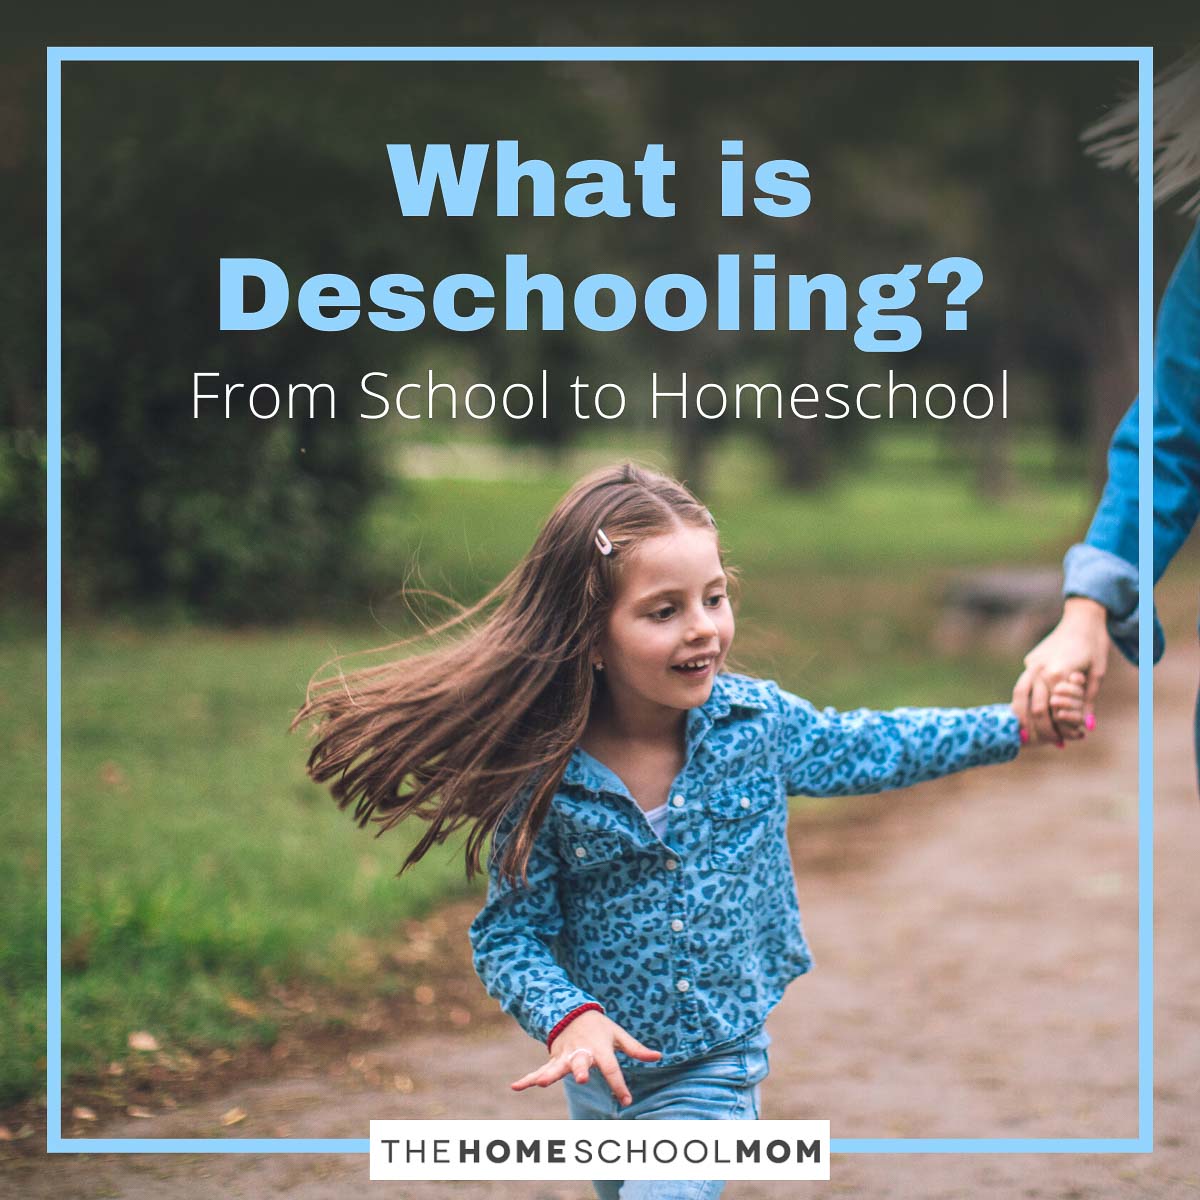 What is Deschooling? From School to Homeschool